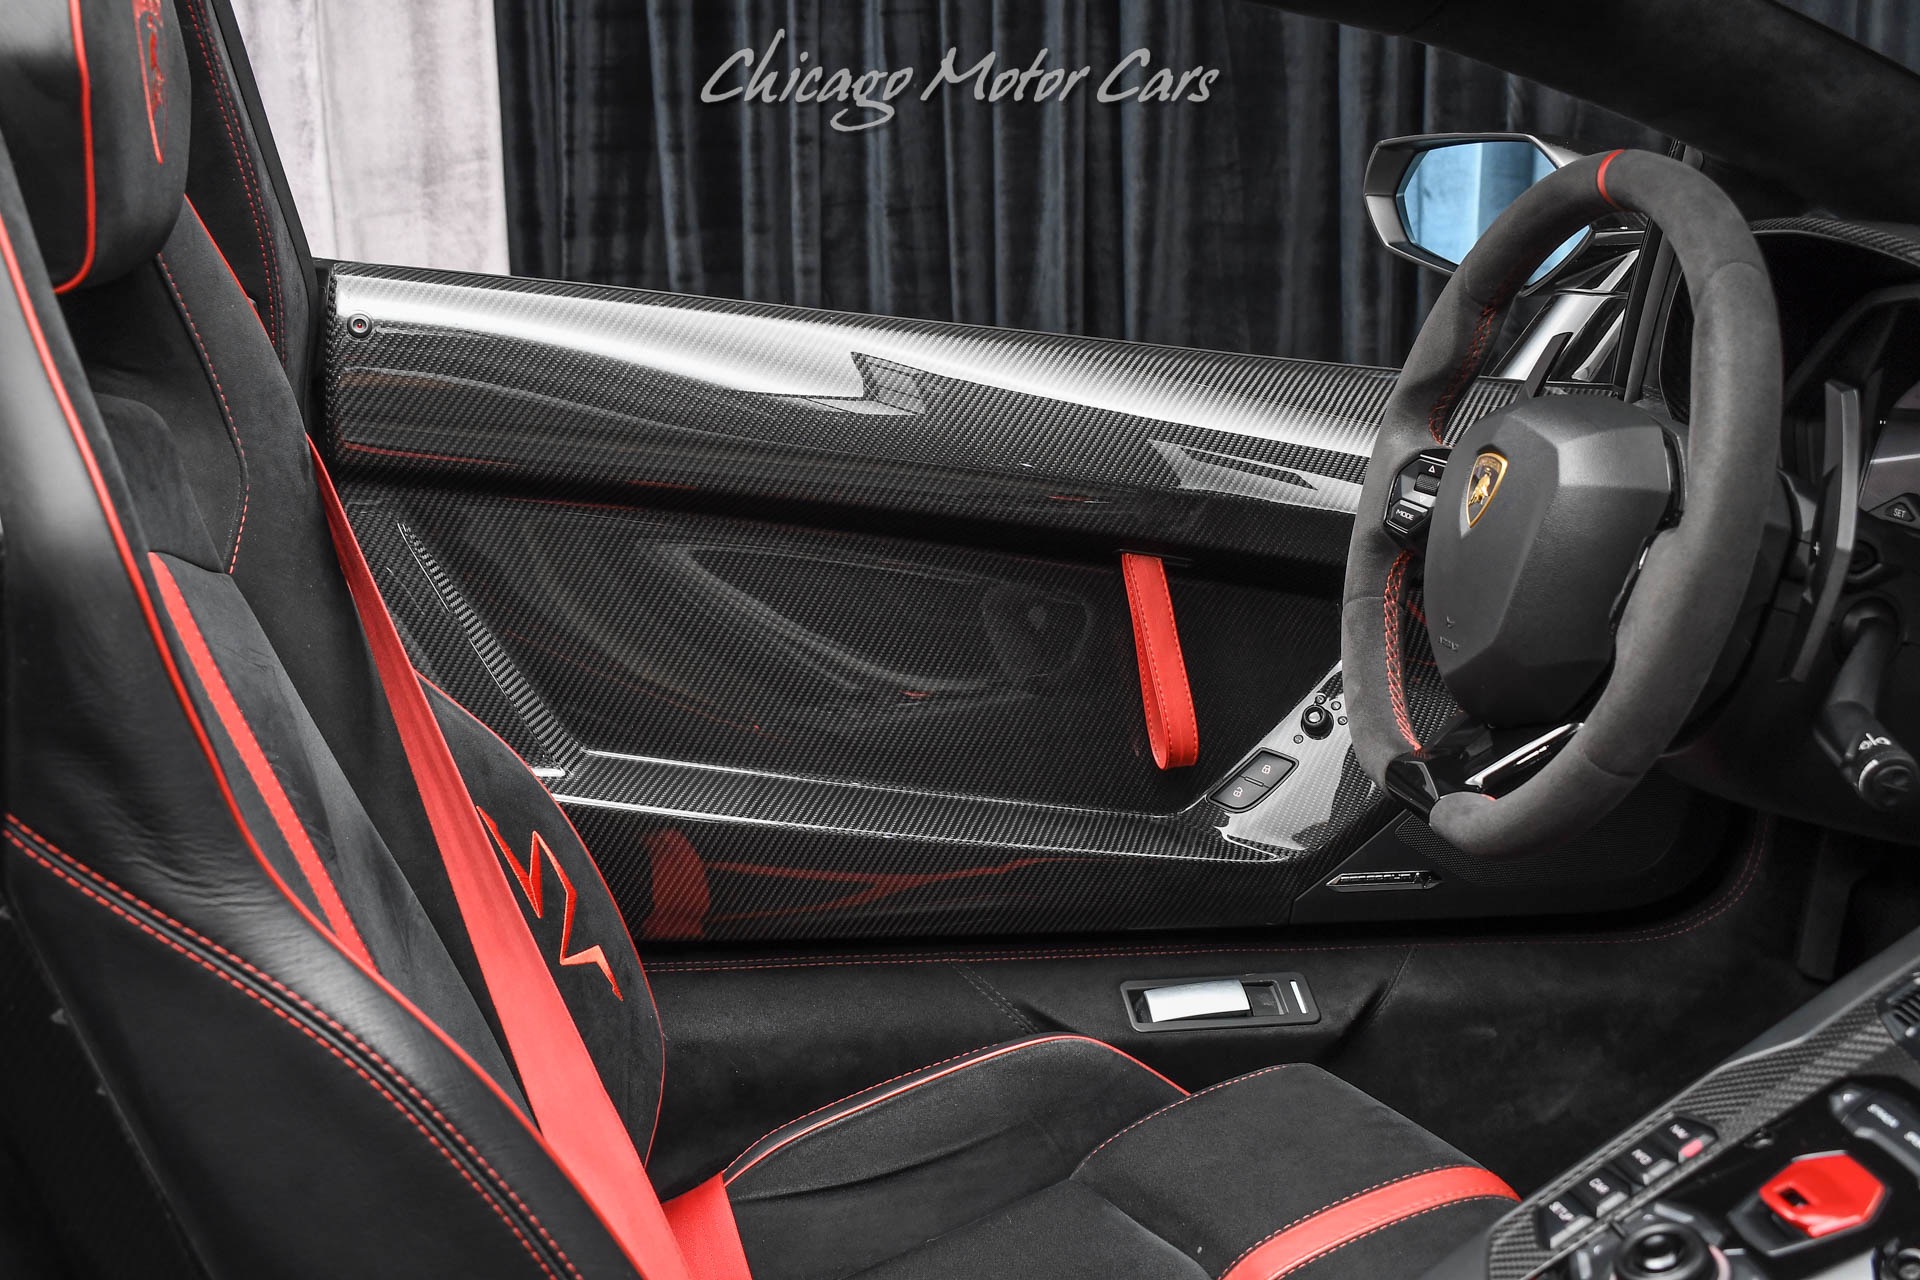 Used-2016-Lamborghini-Aventador-LP750-4-SV-Roadster-MSRP-604k-Carbon-Fiber-Only-3k-Miles